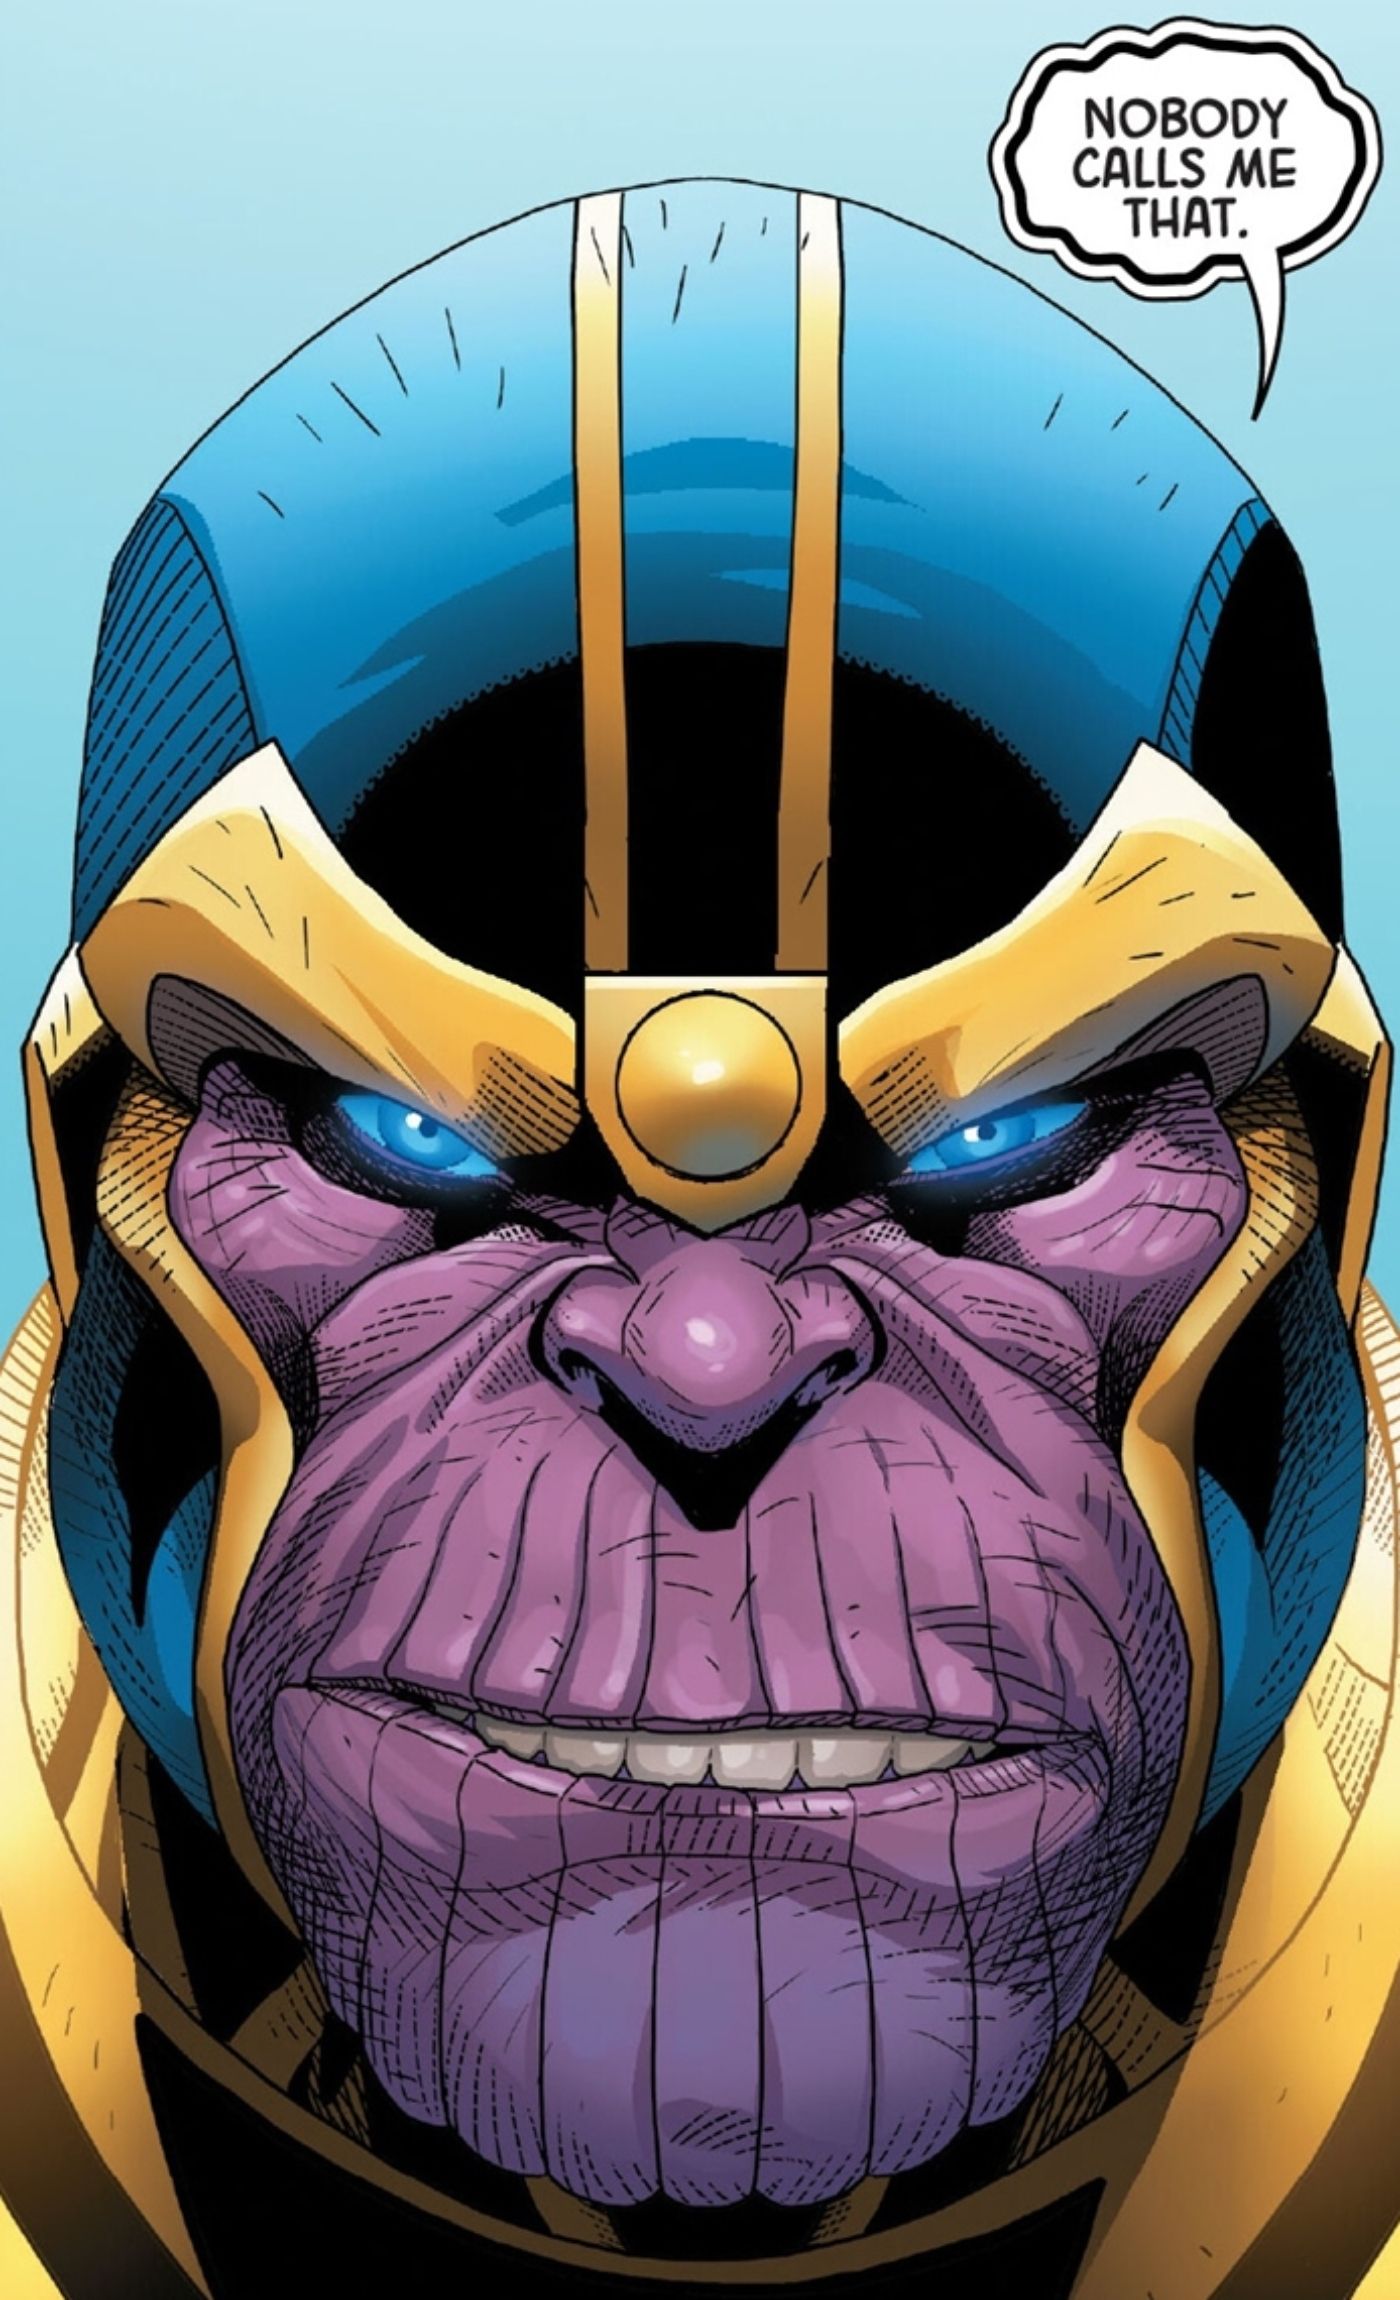 Thanos fica bravo quando alguém o chama de um apelido insultuoso, dizendo: "Ninguém me chama assim".